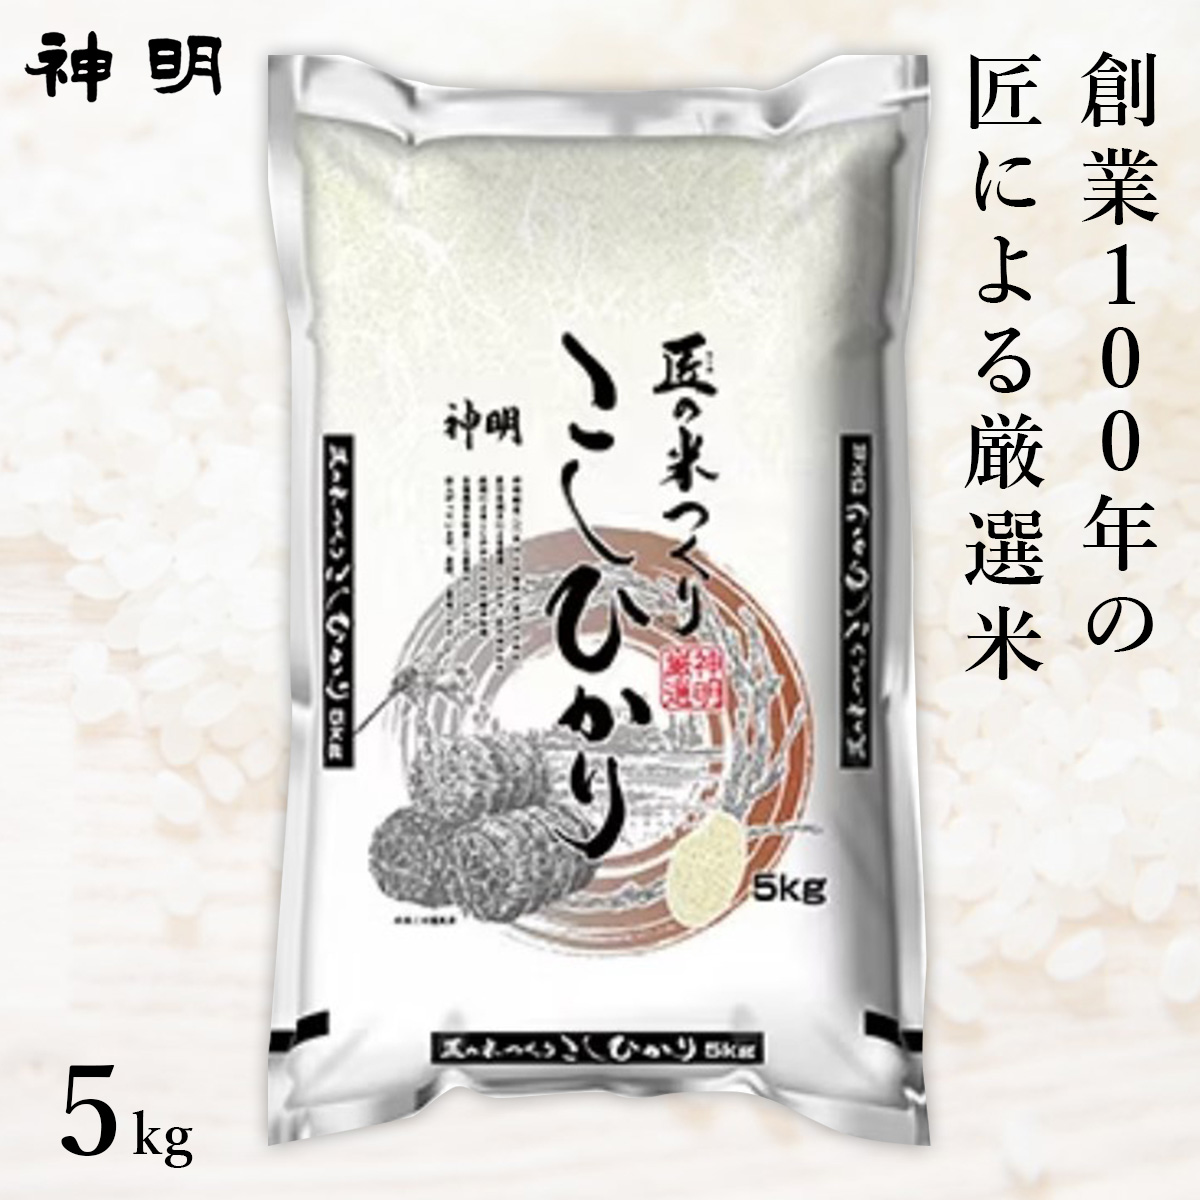 ○【最短当日出荷】匠のお米 コシヒカリ 5kg(1袋) 精米仕立て 家計応援米